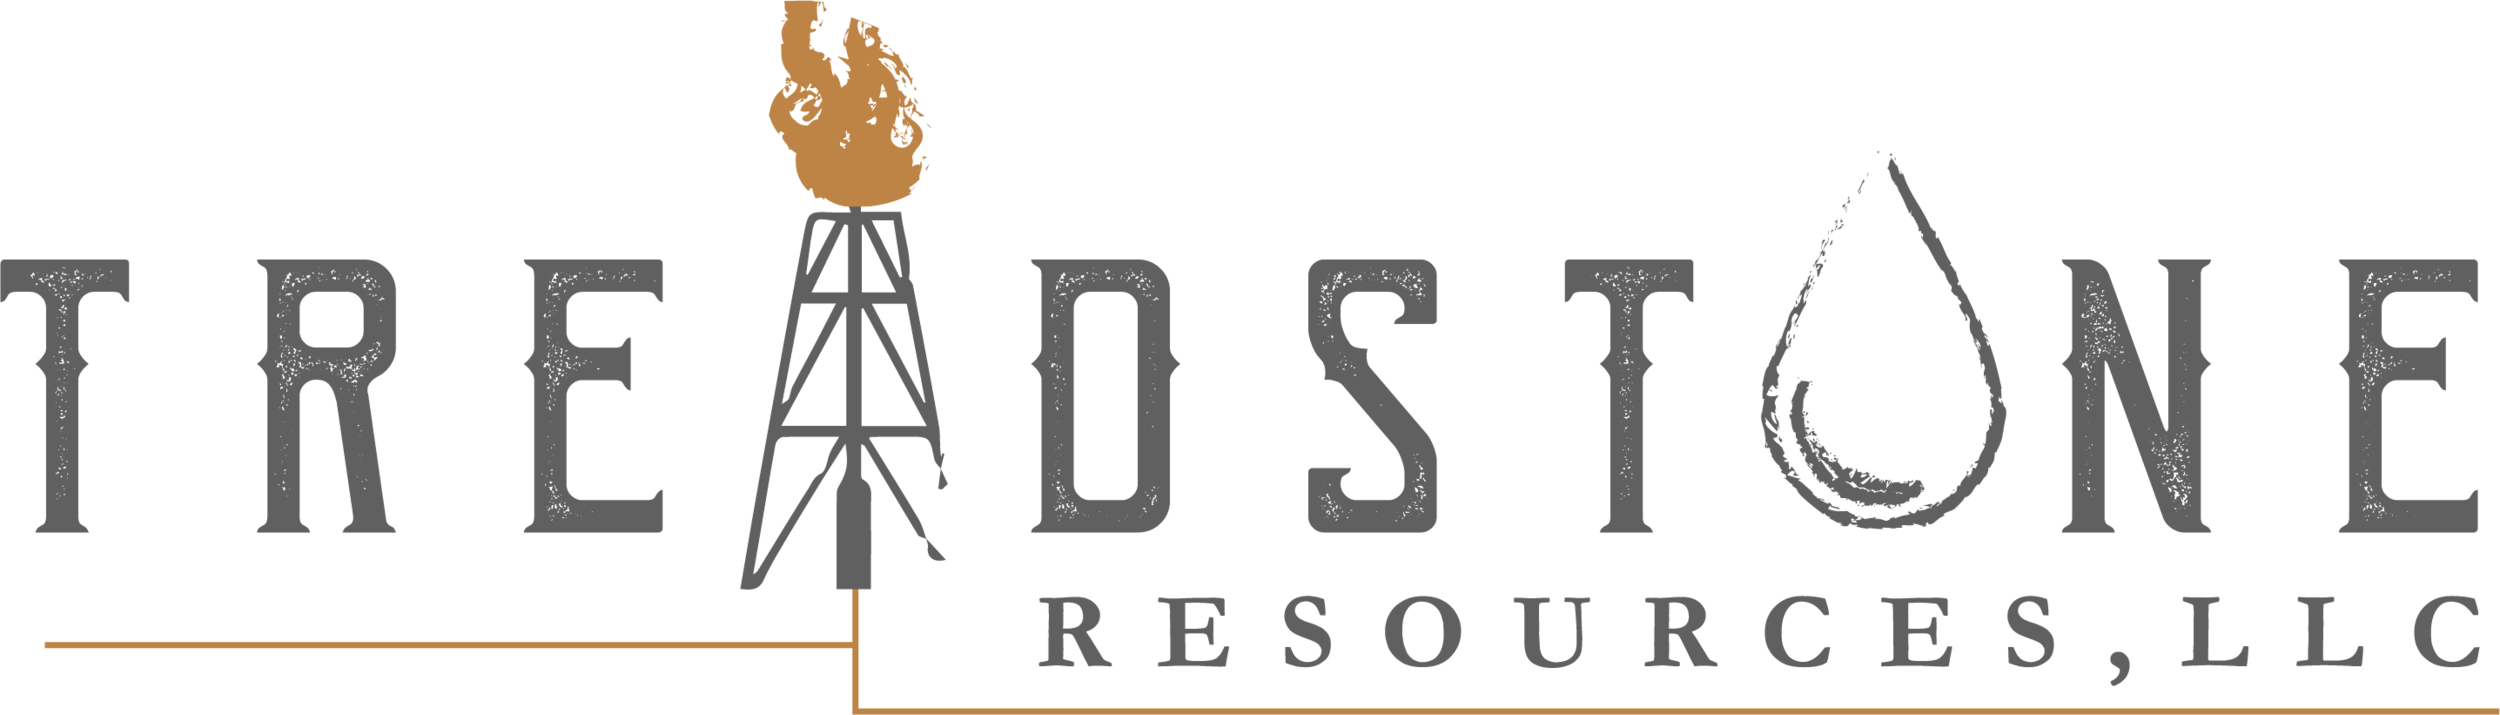 Treadstone Resources, LLC